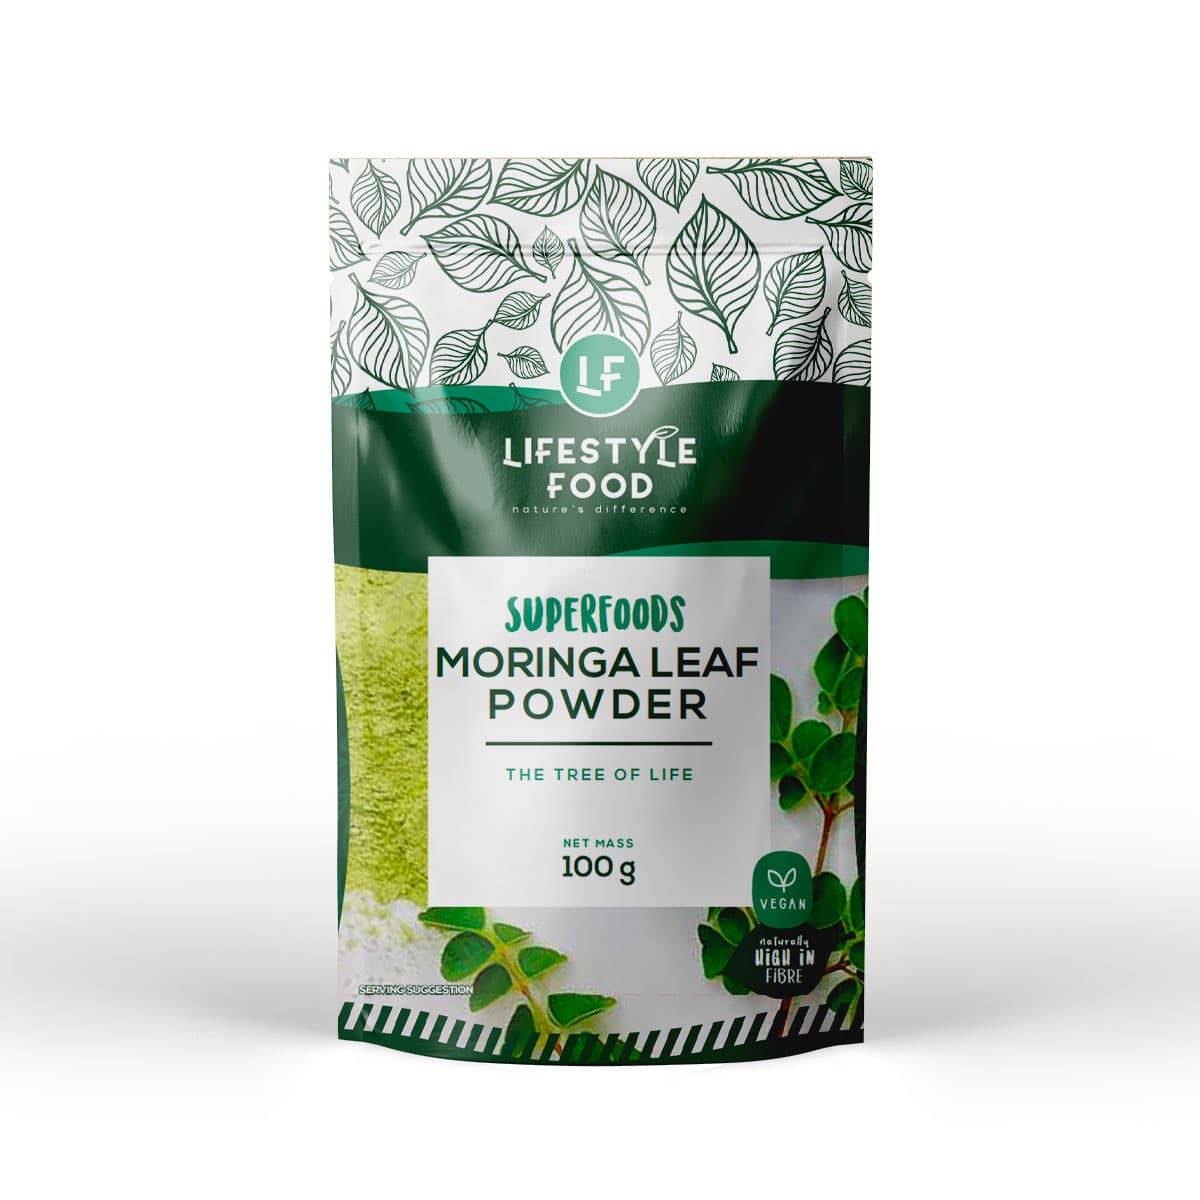 Lifestyle Food Superfoods Moringa Leaf Powder - 100g